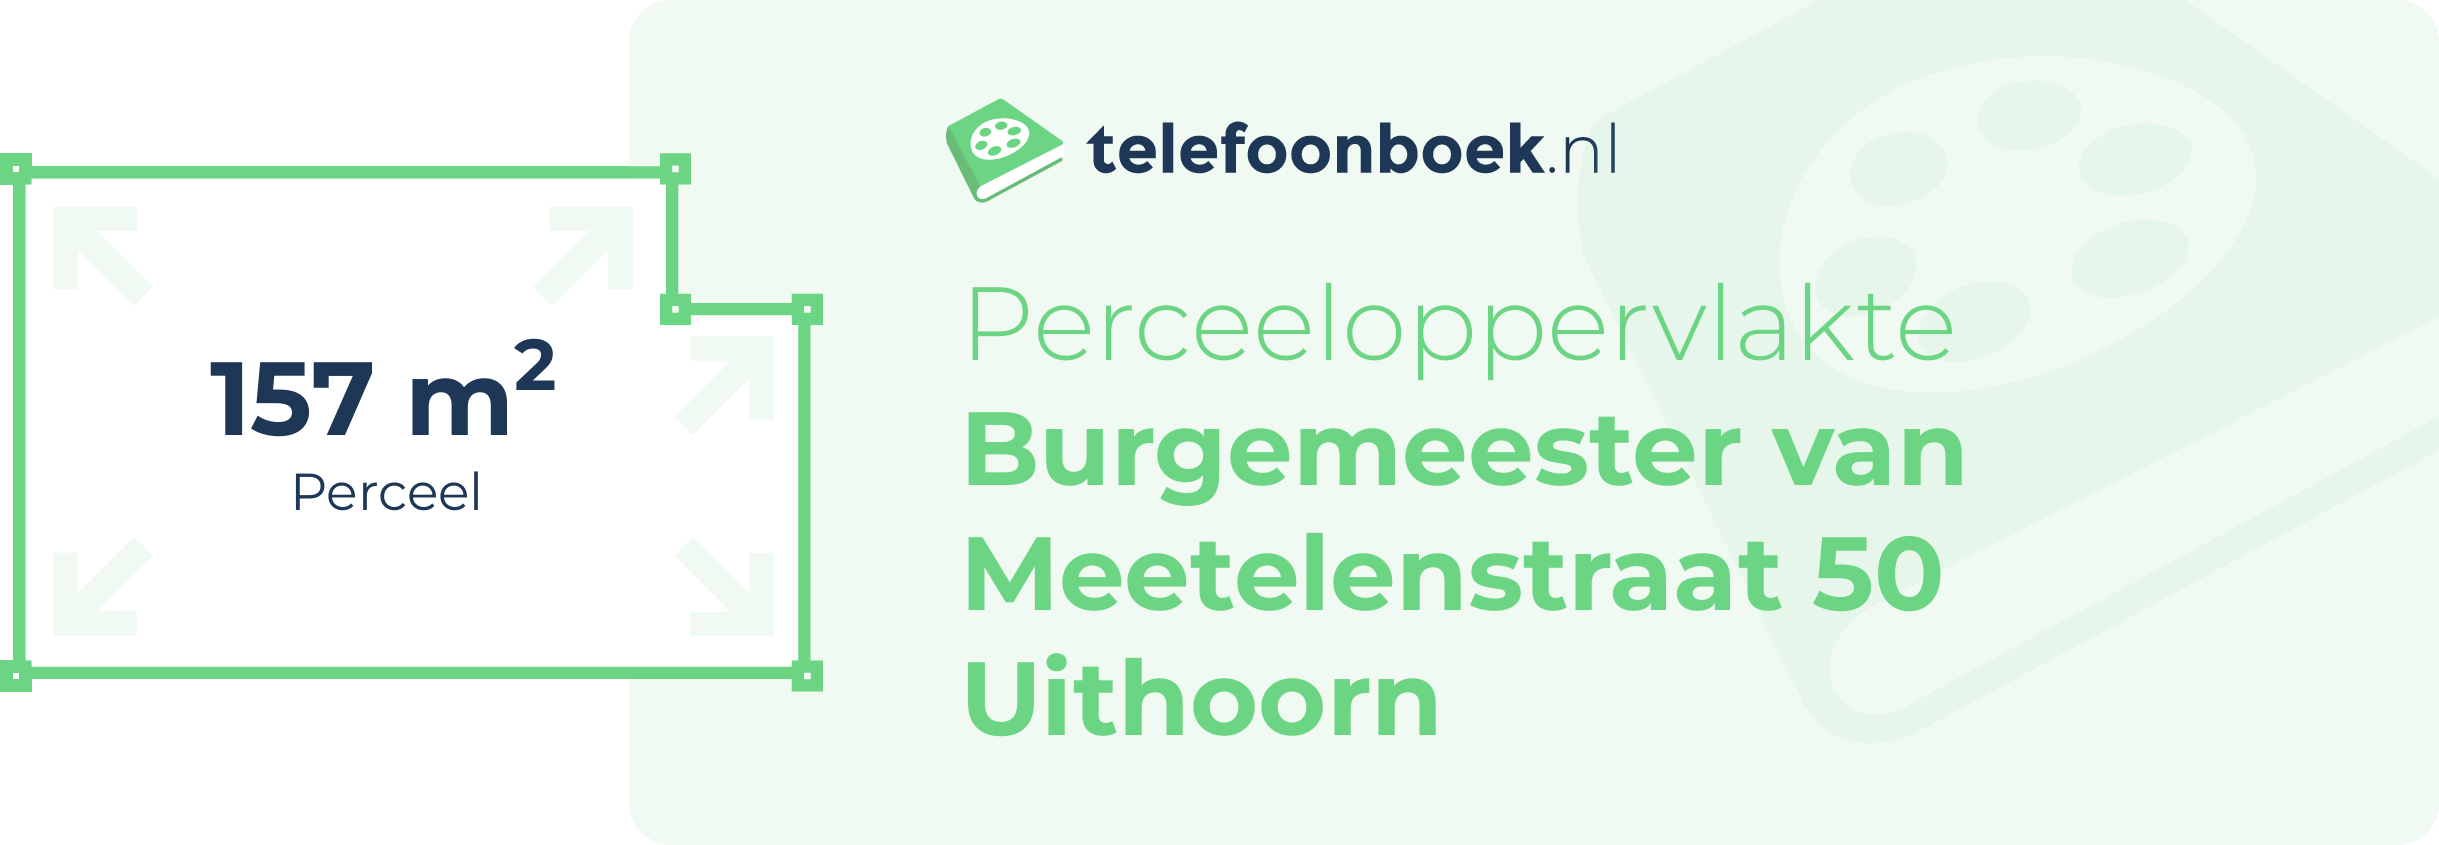 Perceeloppervlakte Burgemeester Van Meetelenstraat 50 Uithoorn